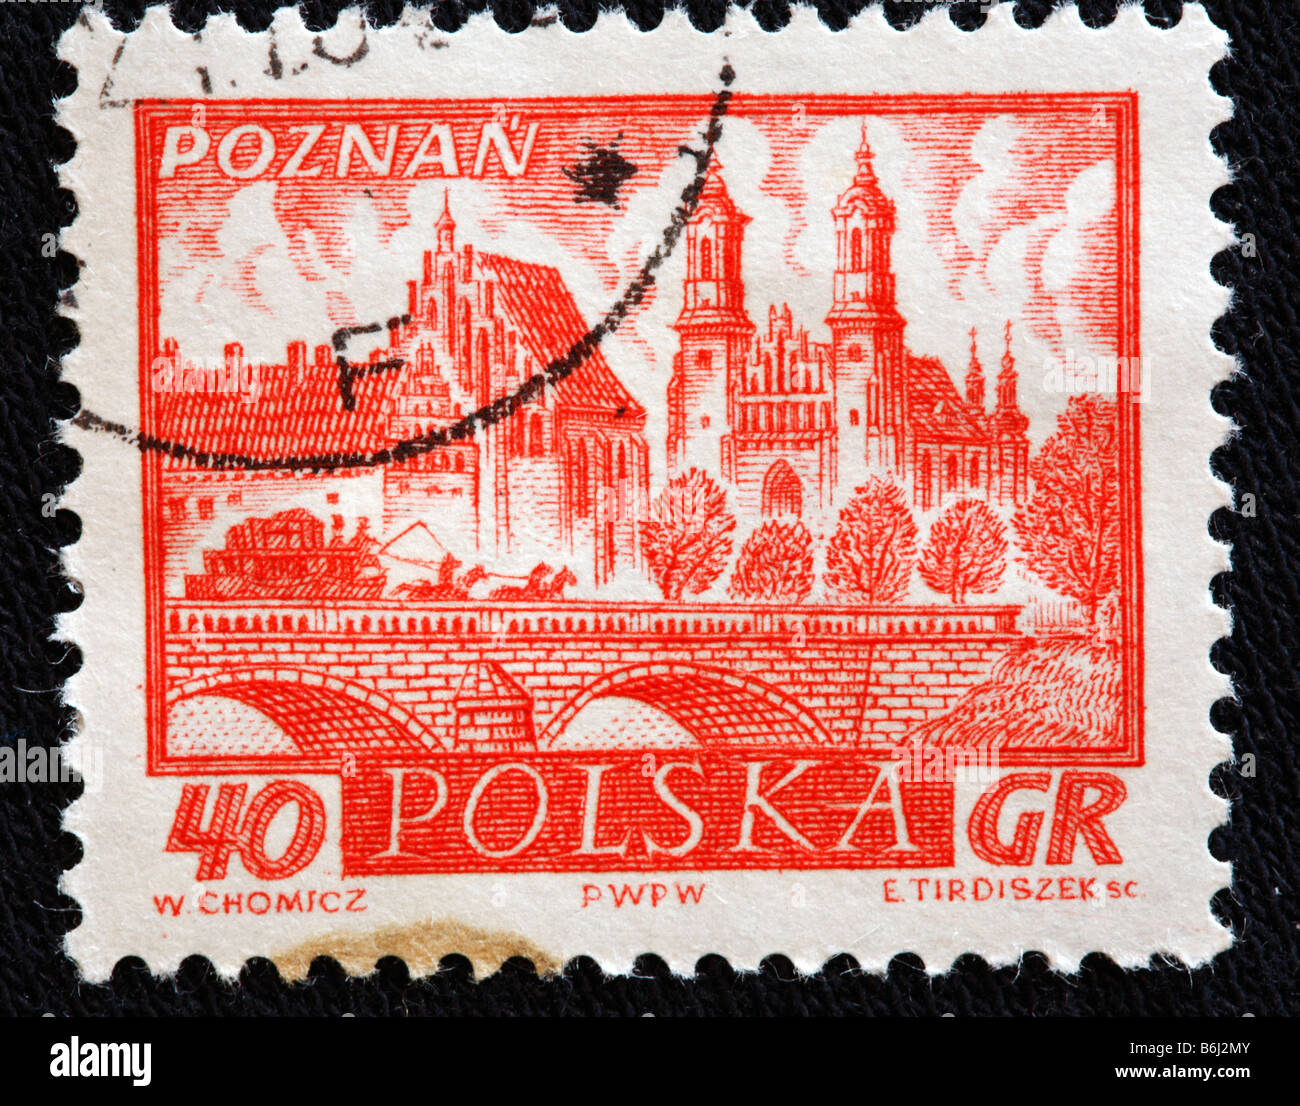 Poznan, timbre-poste, Pologne Banque D'Images